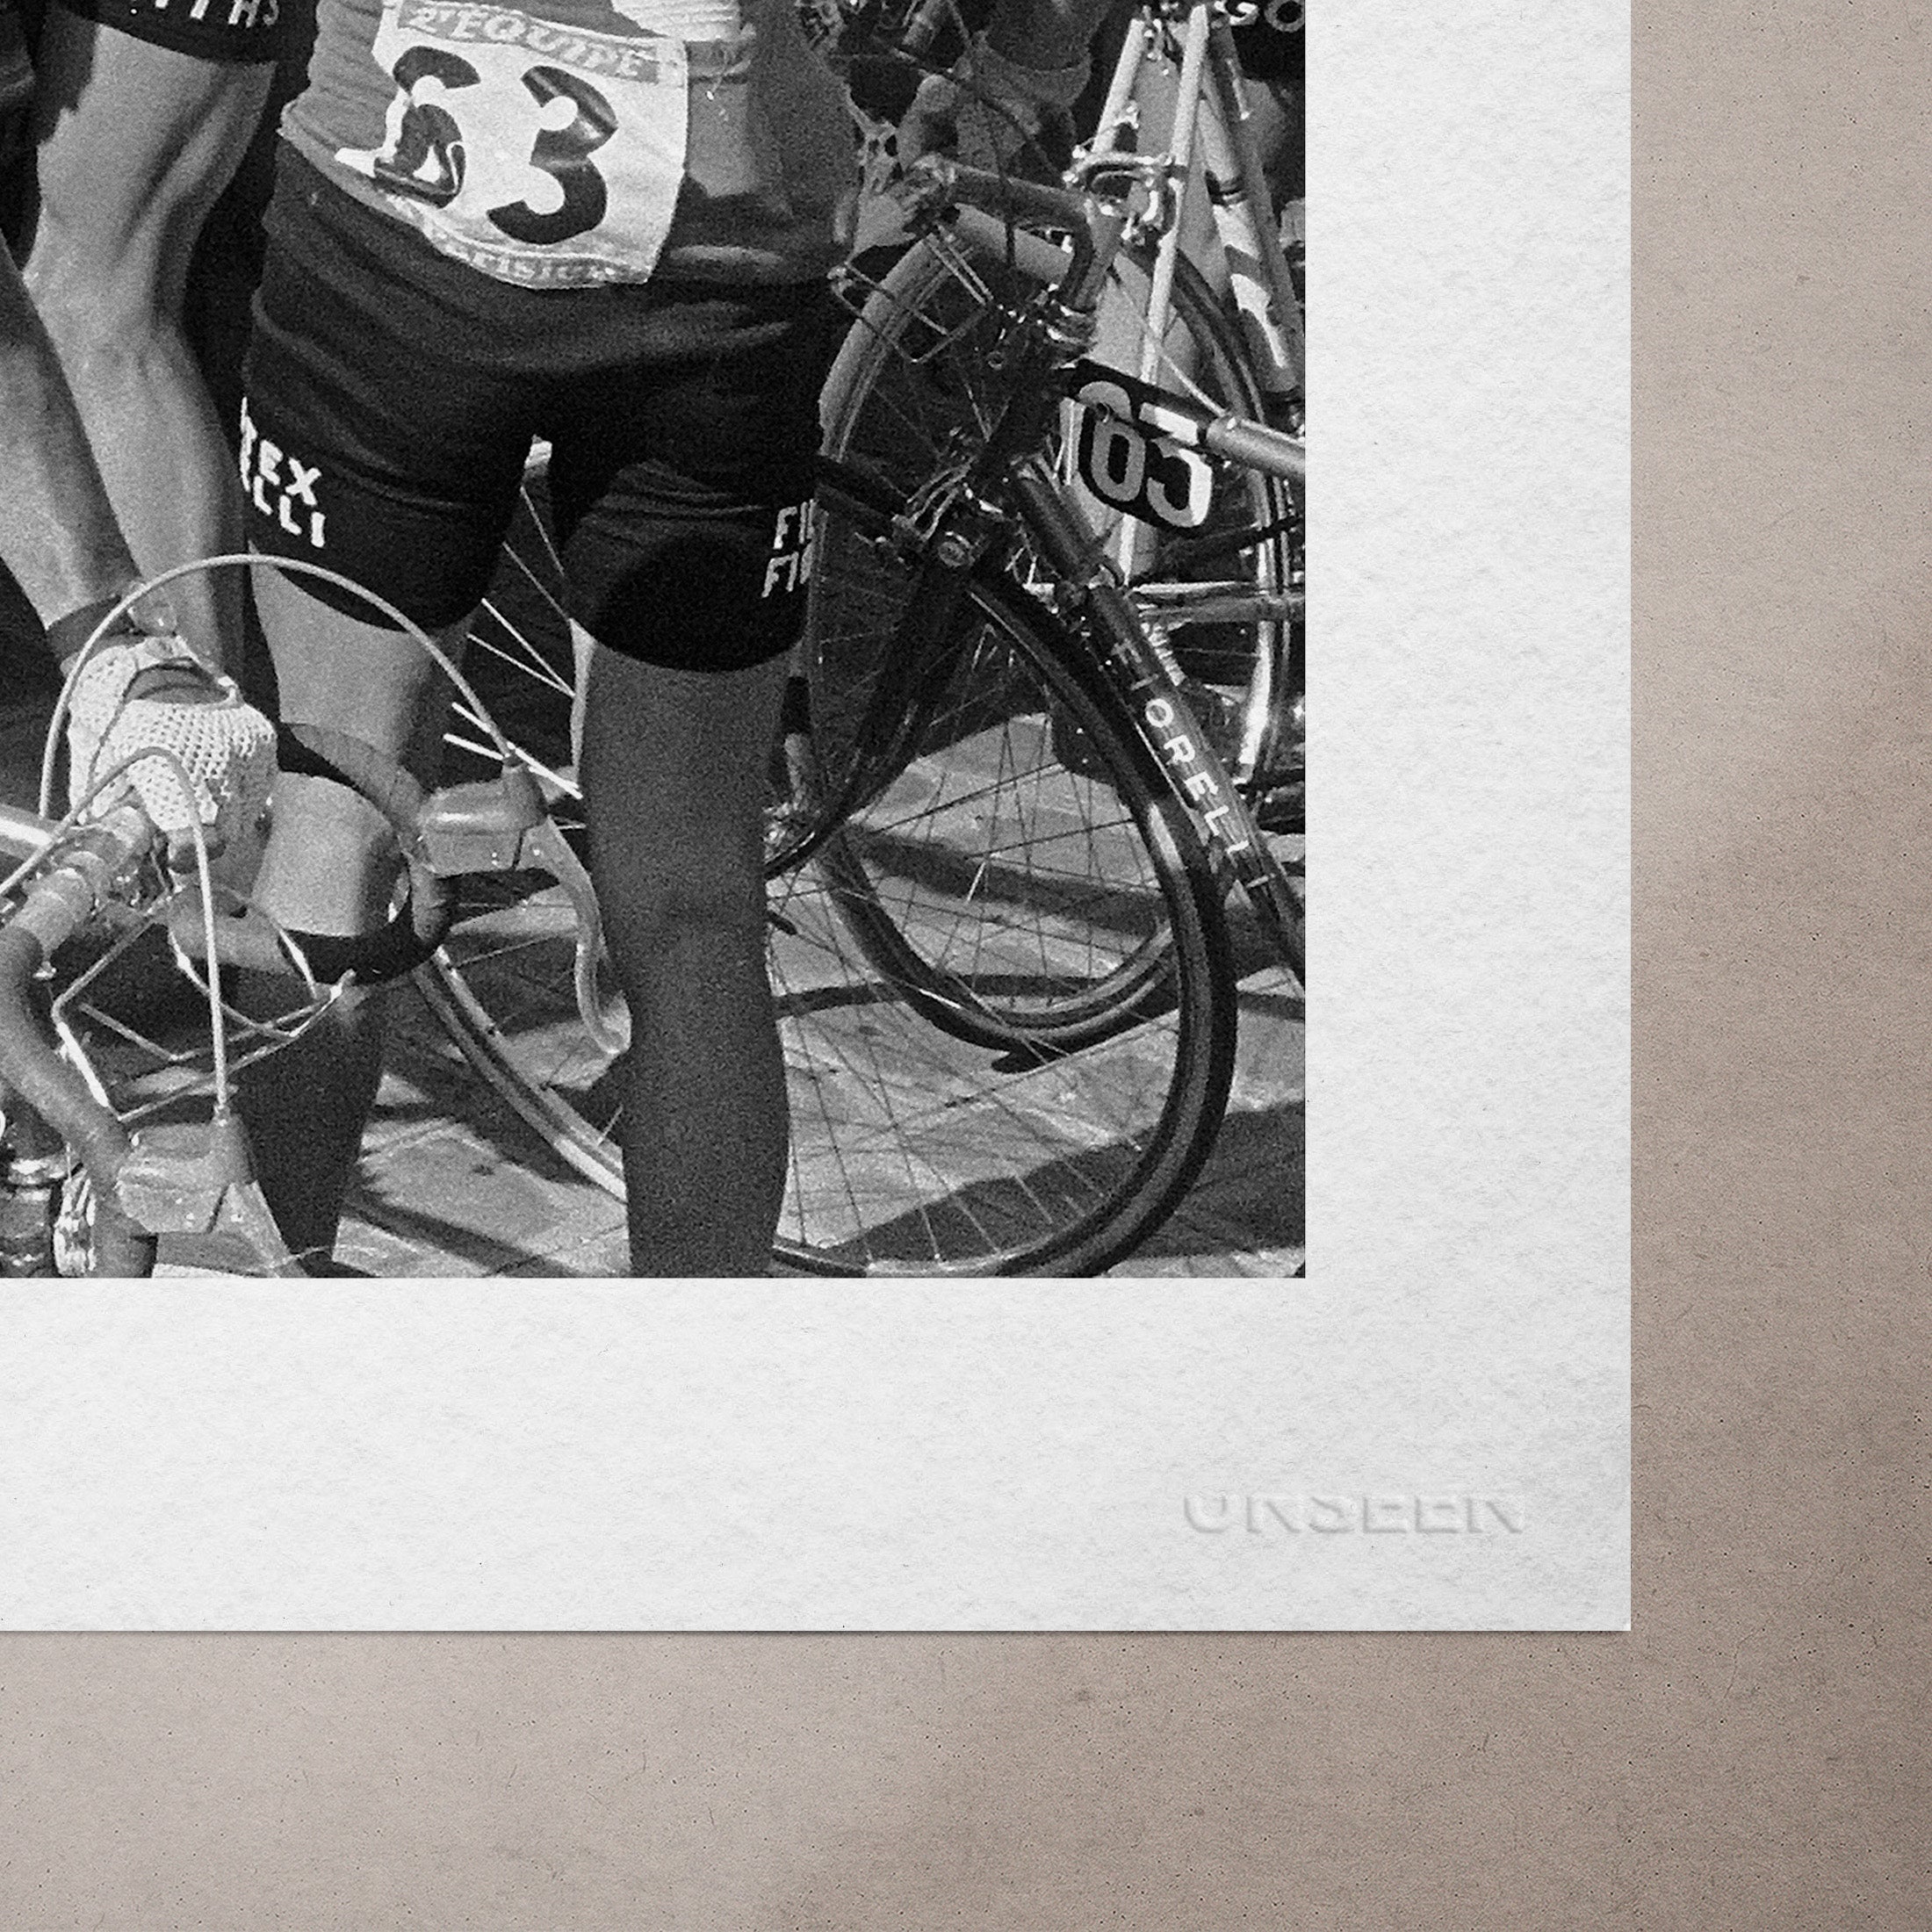 Tour de France, Perrier by Eric Koch, 1966